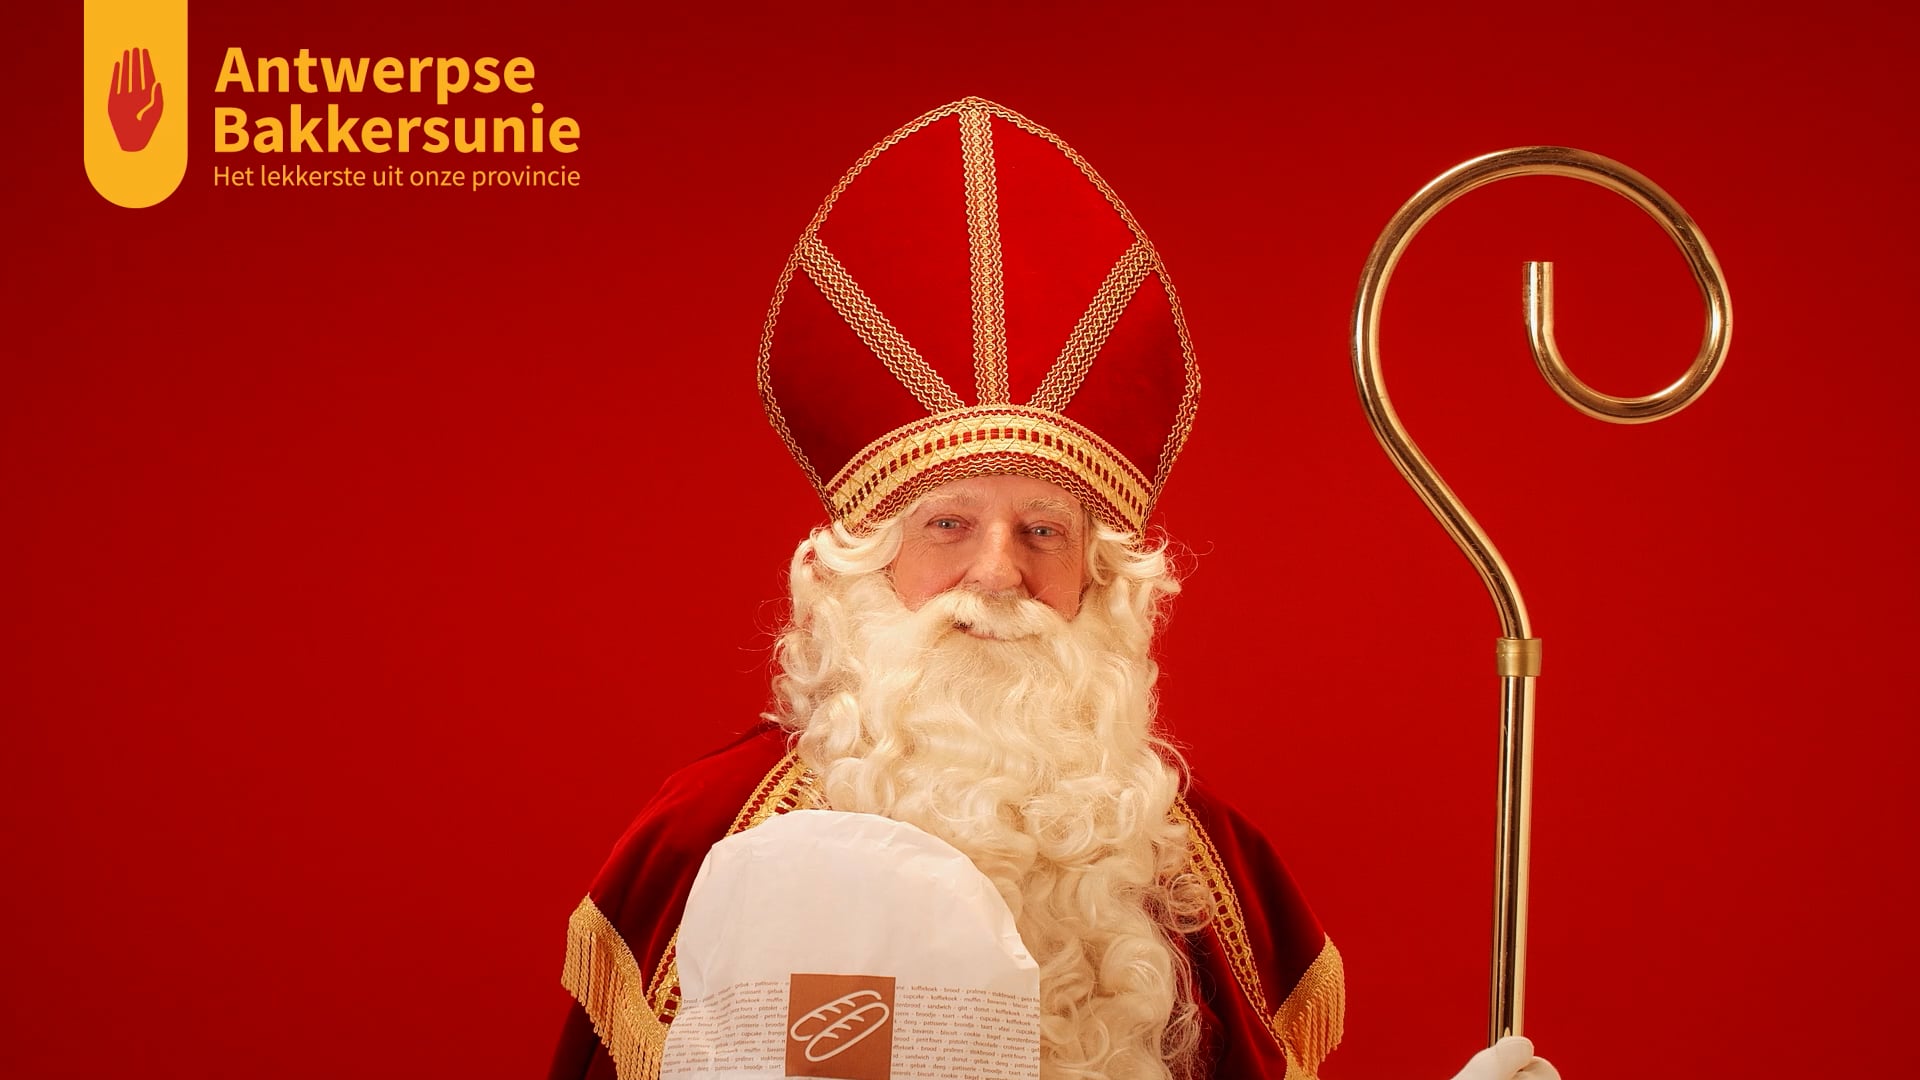 Antwerpse Bakkersunie De Zak Van Sinterklaas On Vimeo 